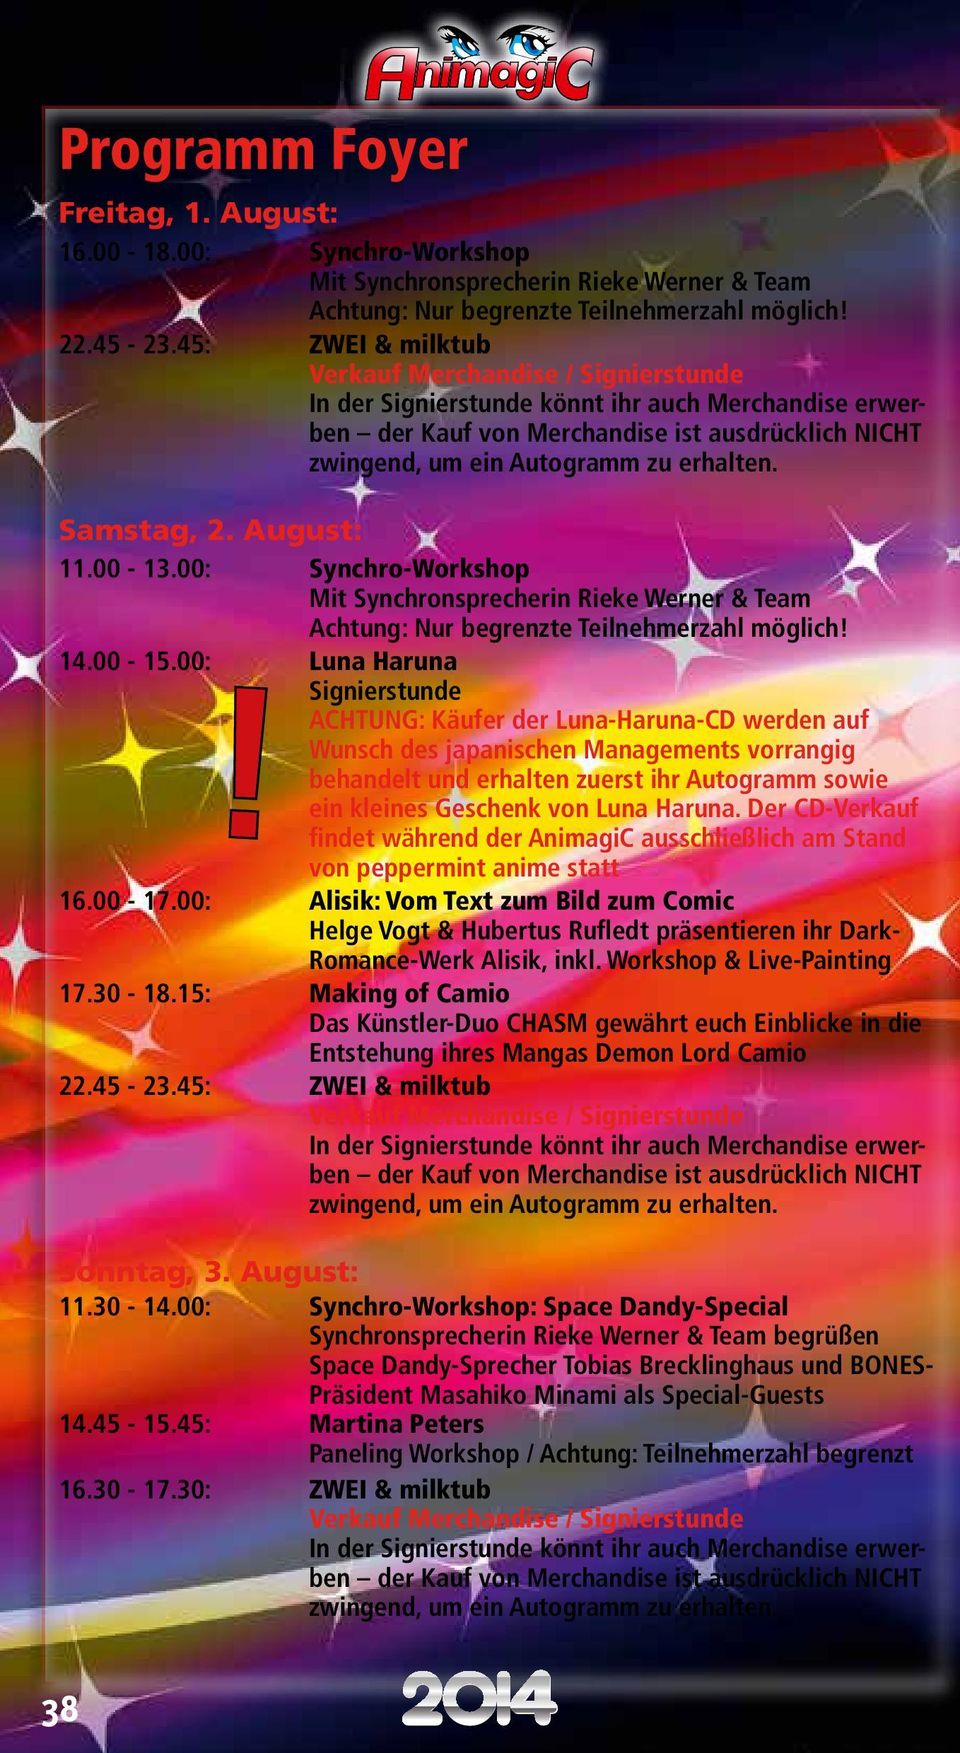 11.00-13.00: Synchro-Workshop Mit Synchronsprecherin Rieke Werner & Team Achtung: Nur begrenzte Teilnehmerzahl möglich! 14.00-15.